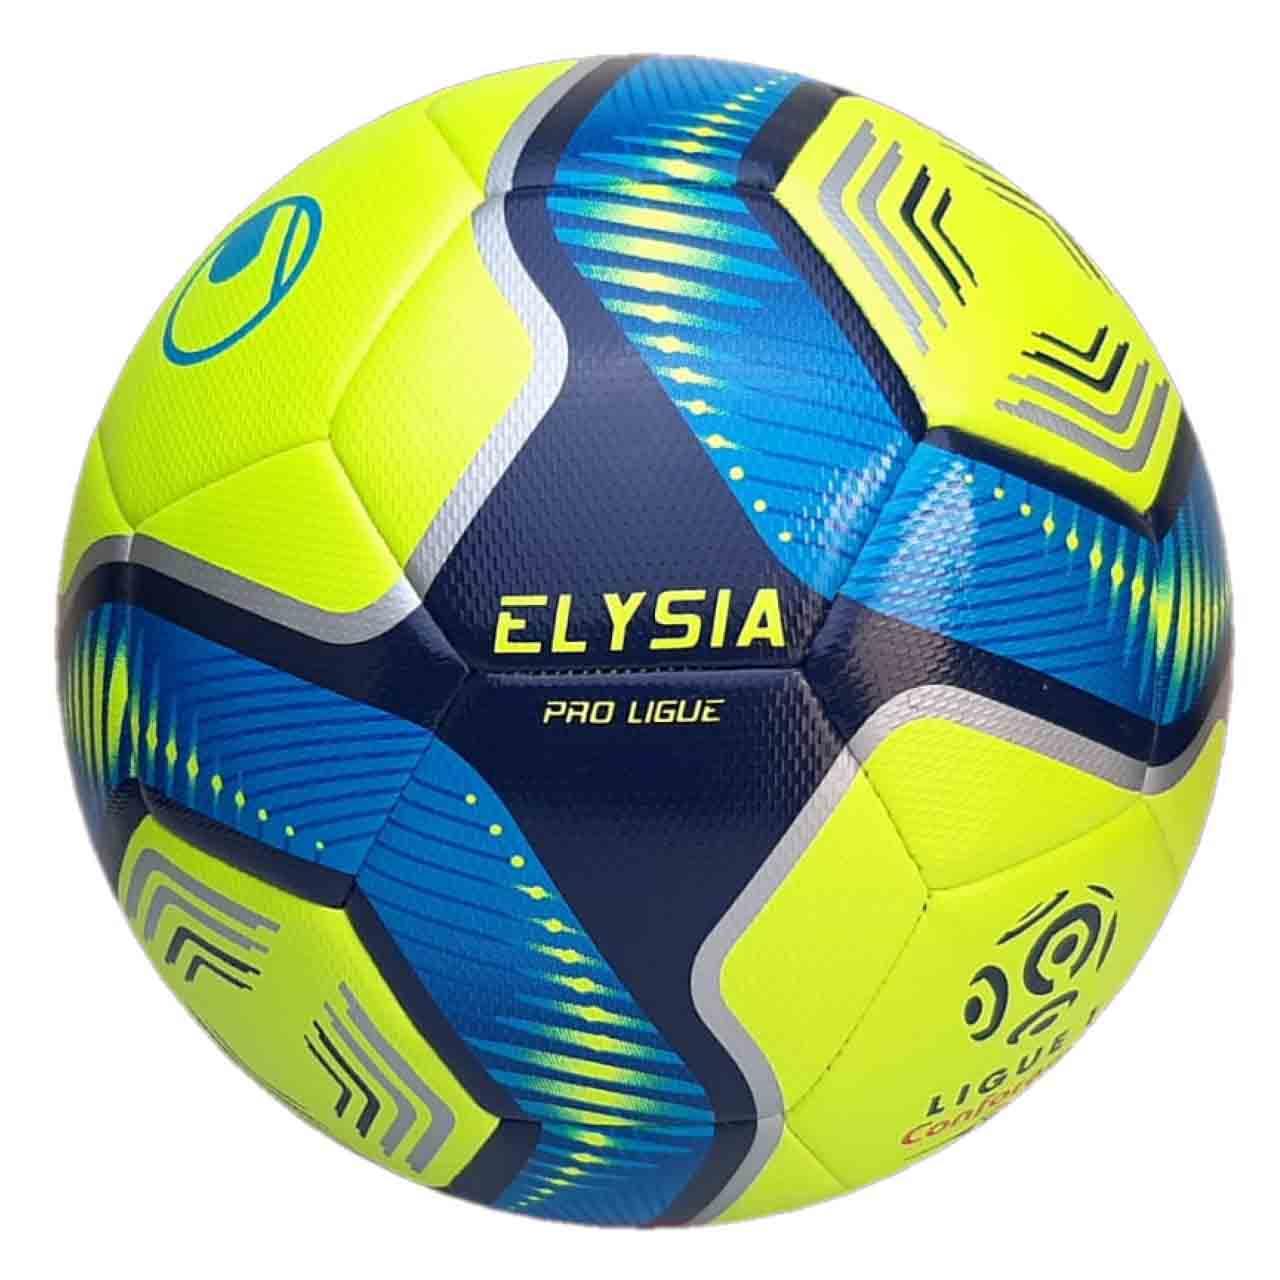 Elysia - Bola Ligue 1